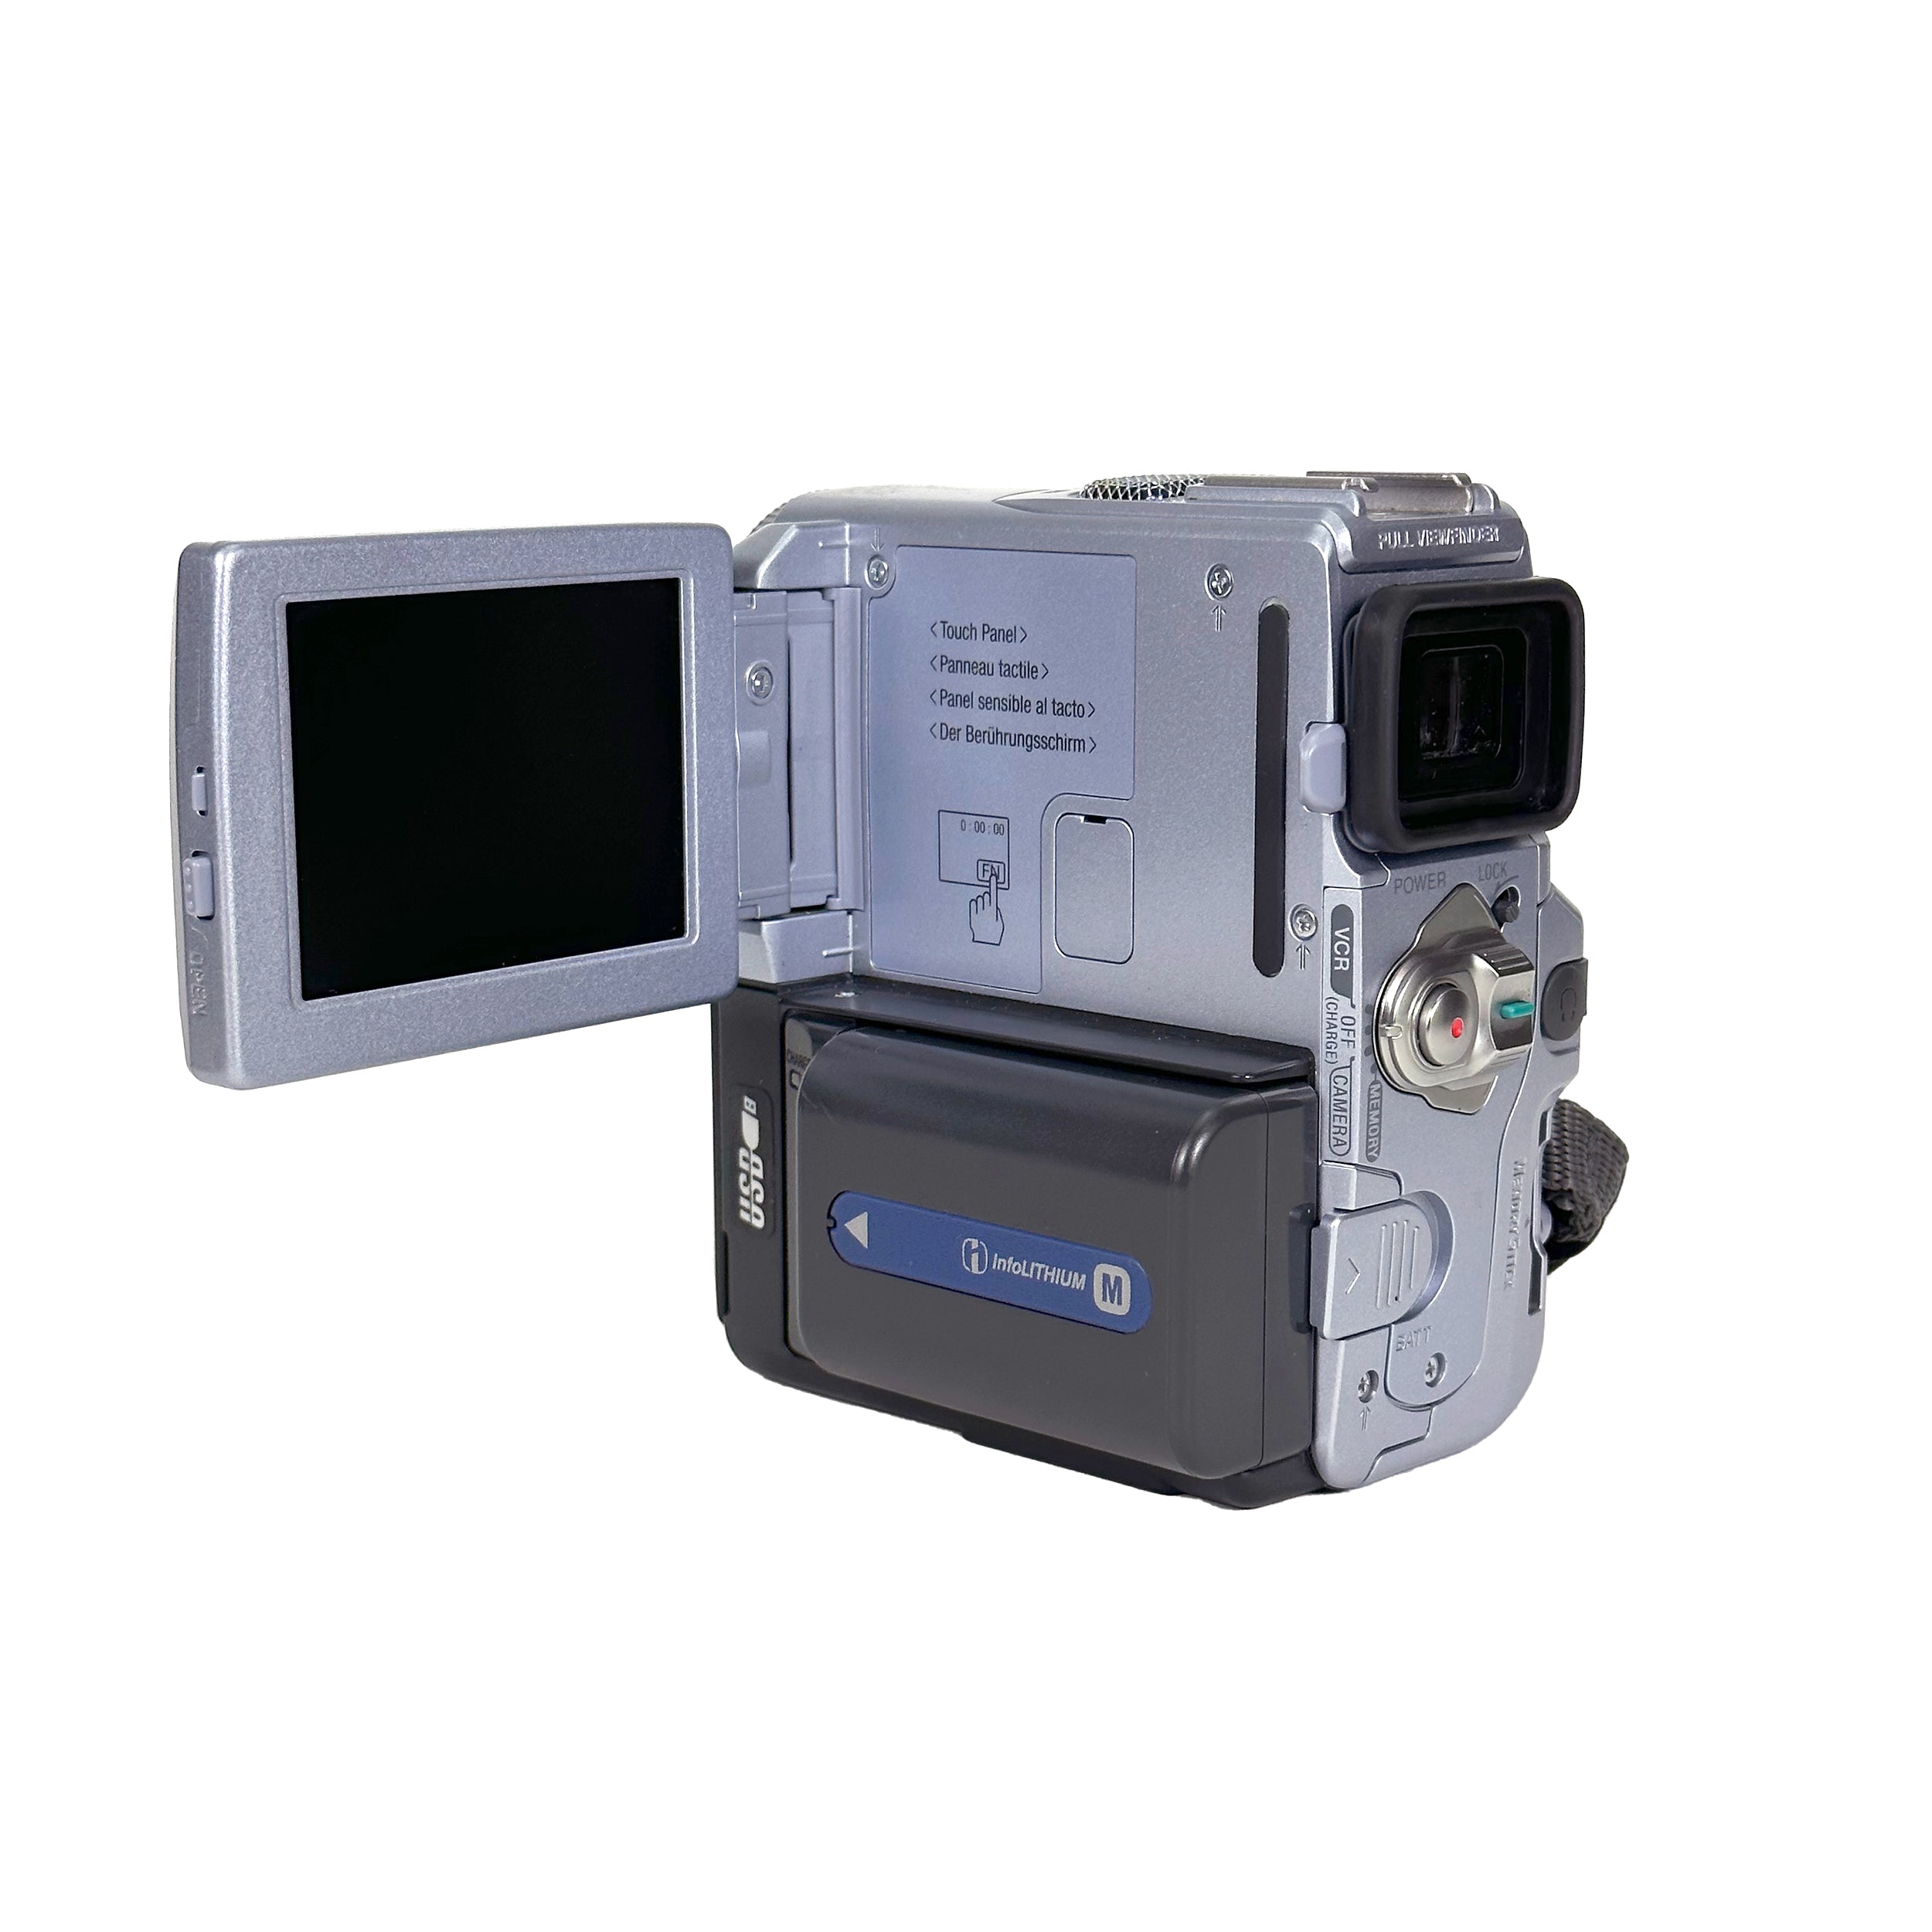 SONY MiniDVビデオカメラ DCR-PC10 人気定番 63.0%OFF www